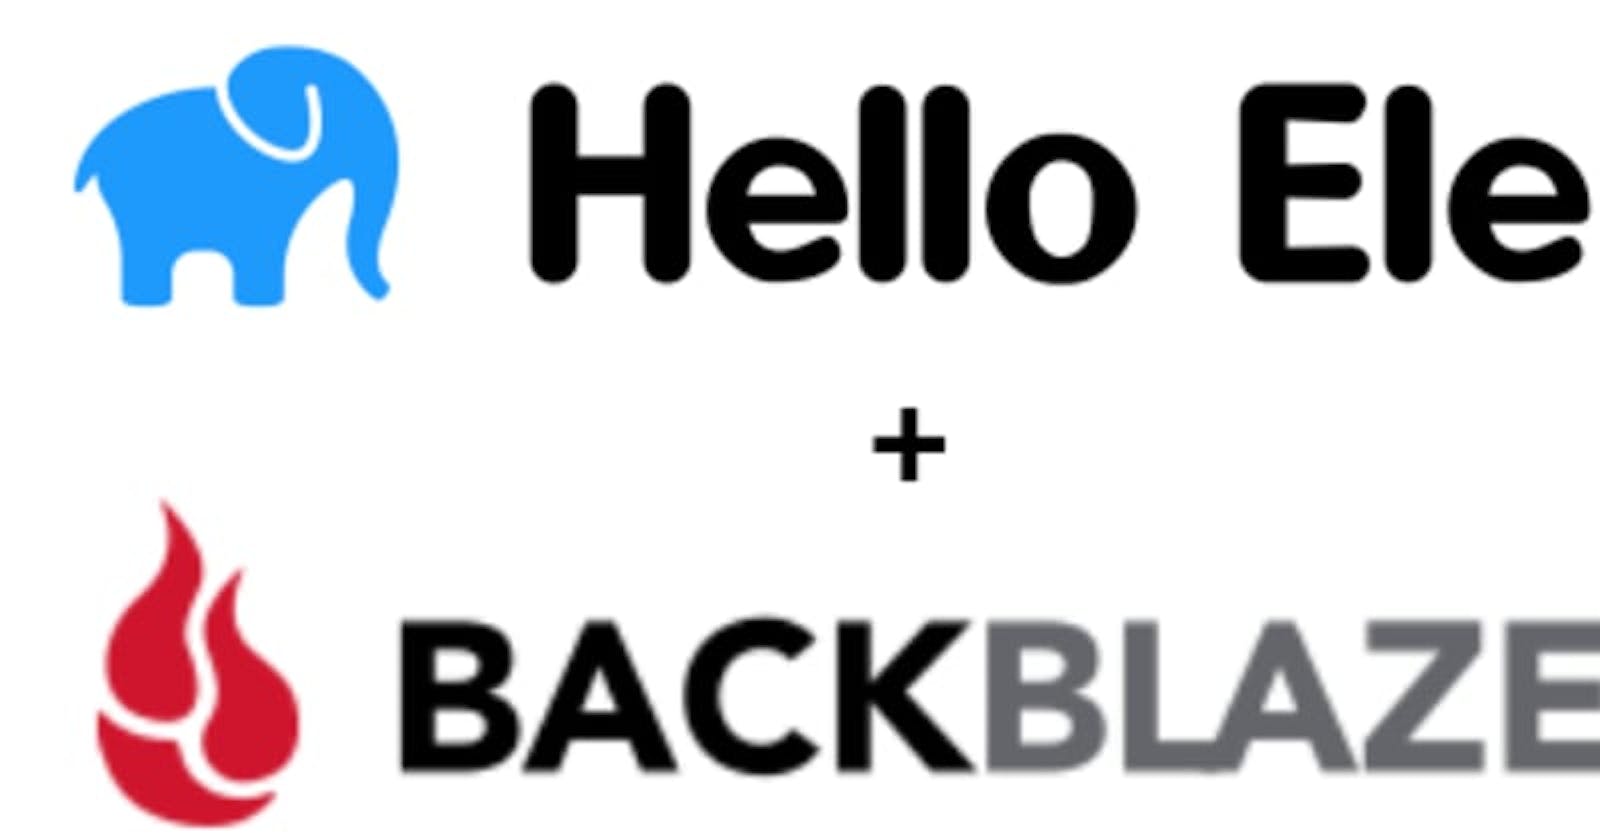 Using HelloEle with free BackBlaze bucket